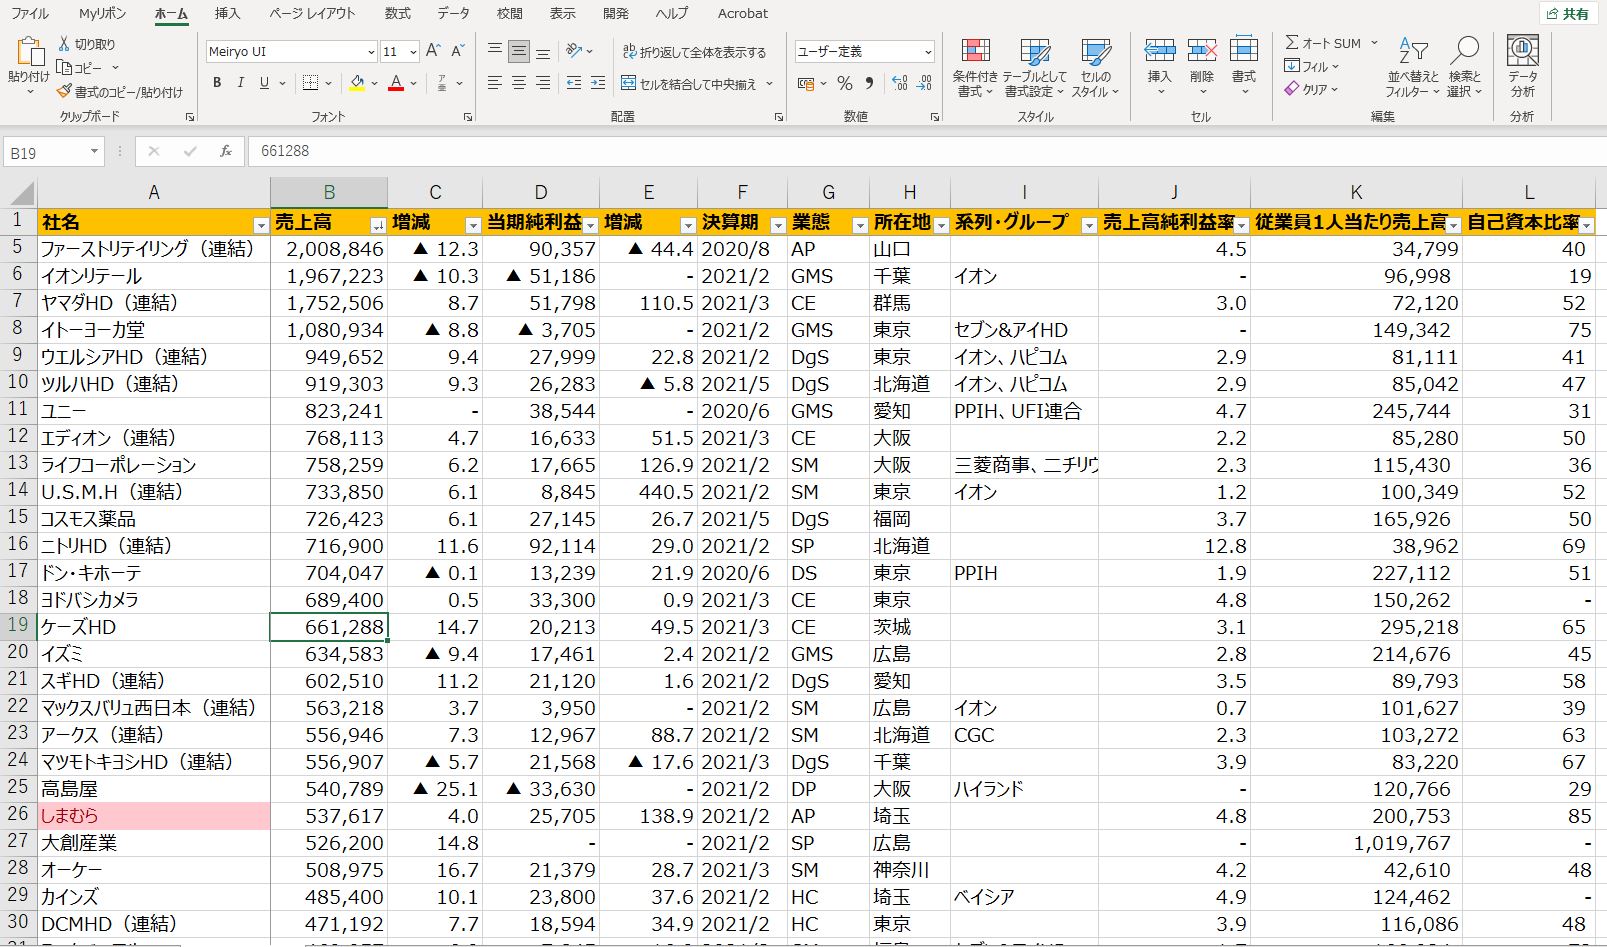 日本の小売業1000社ランキング2021年版【Excel形式】